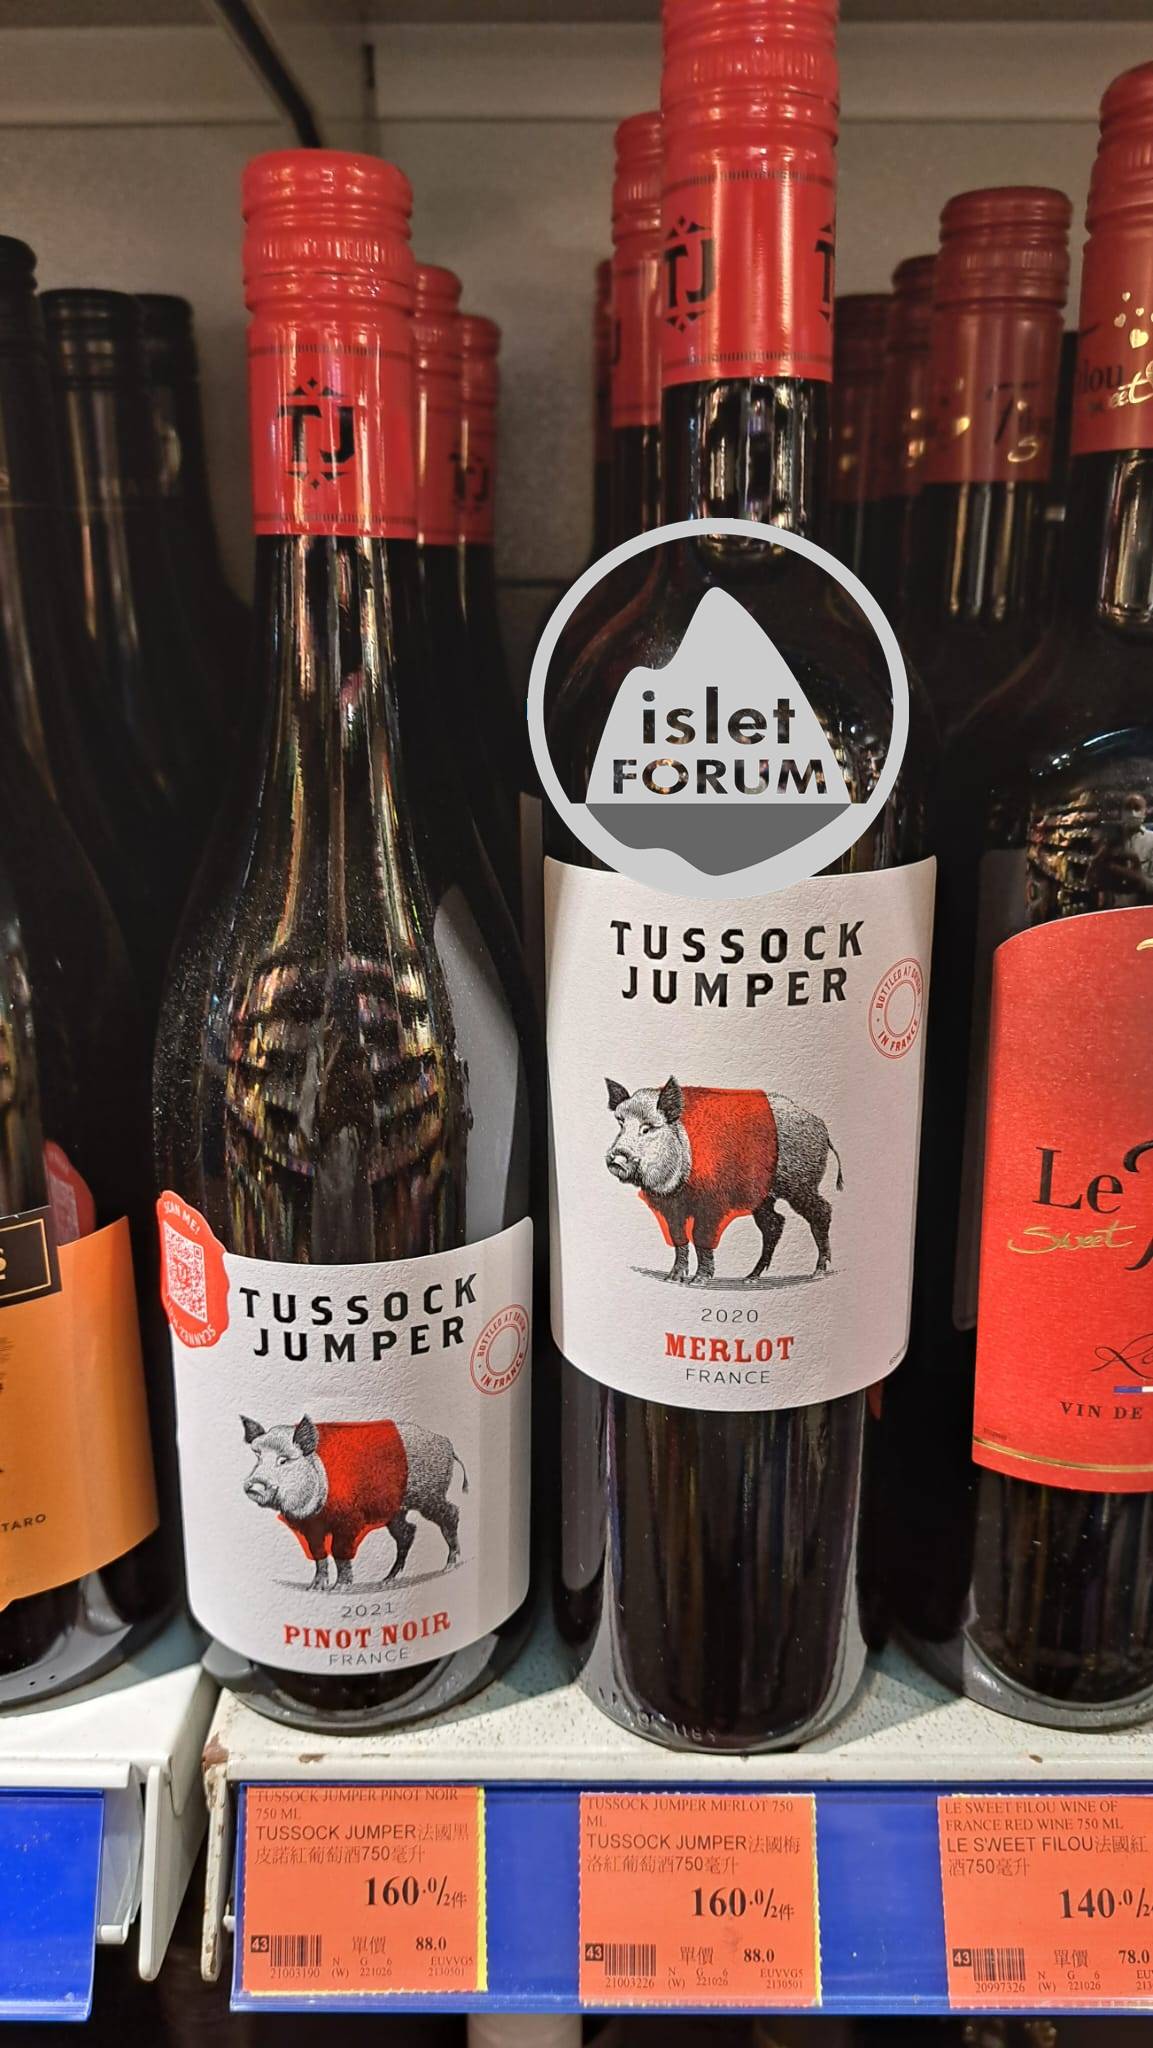 Tussock Jumper 是一個葡萄酒品牌 (1).jpeg